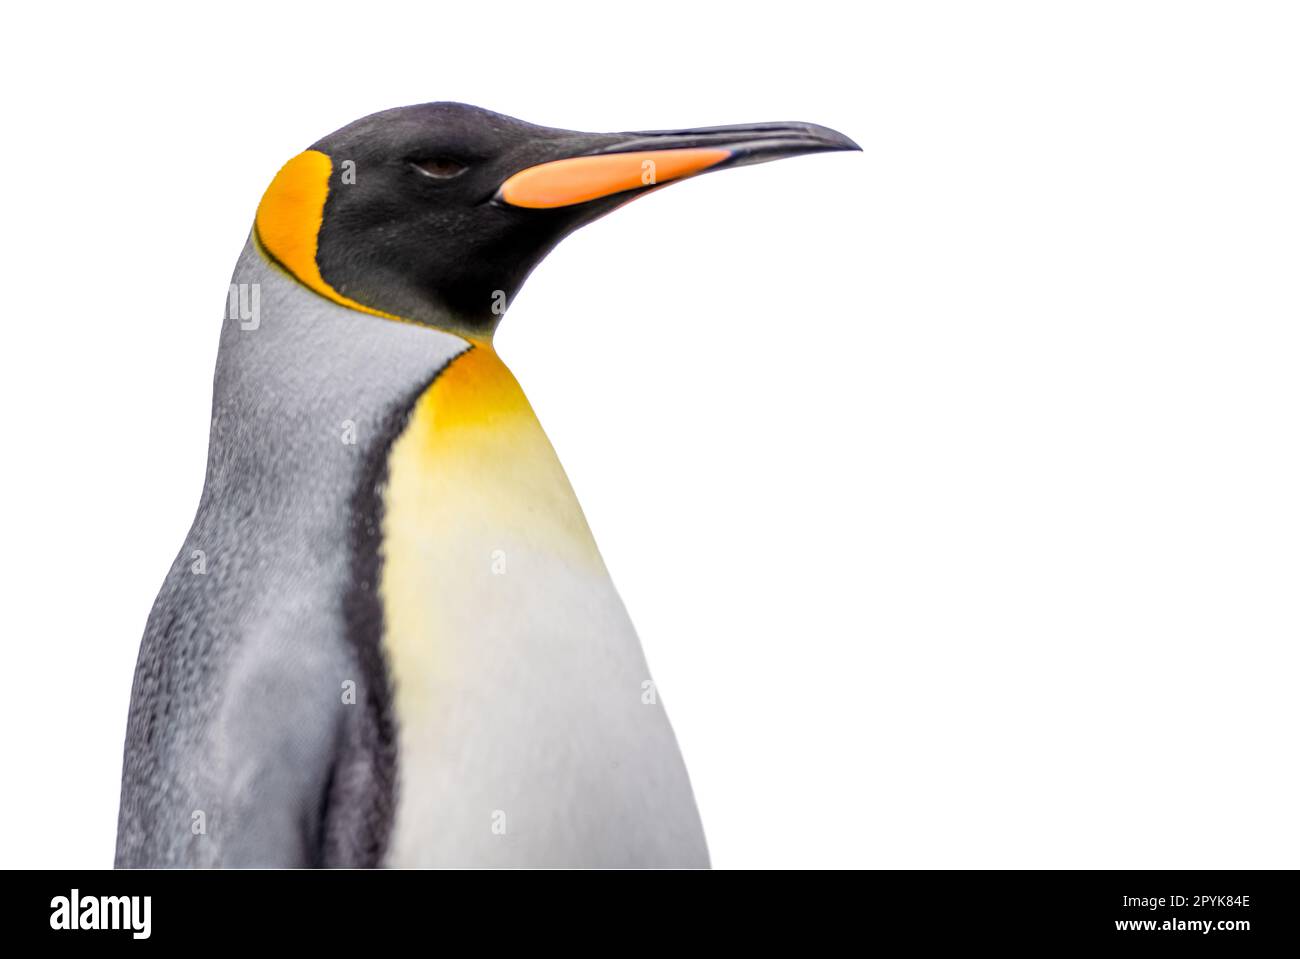 Gros plan latéral de la tête d'un joli grand pingouin, rogné sur un fond blanc Banque D'Images